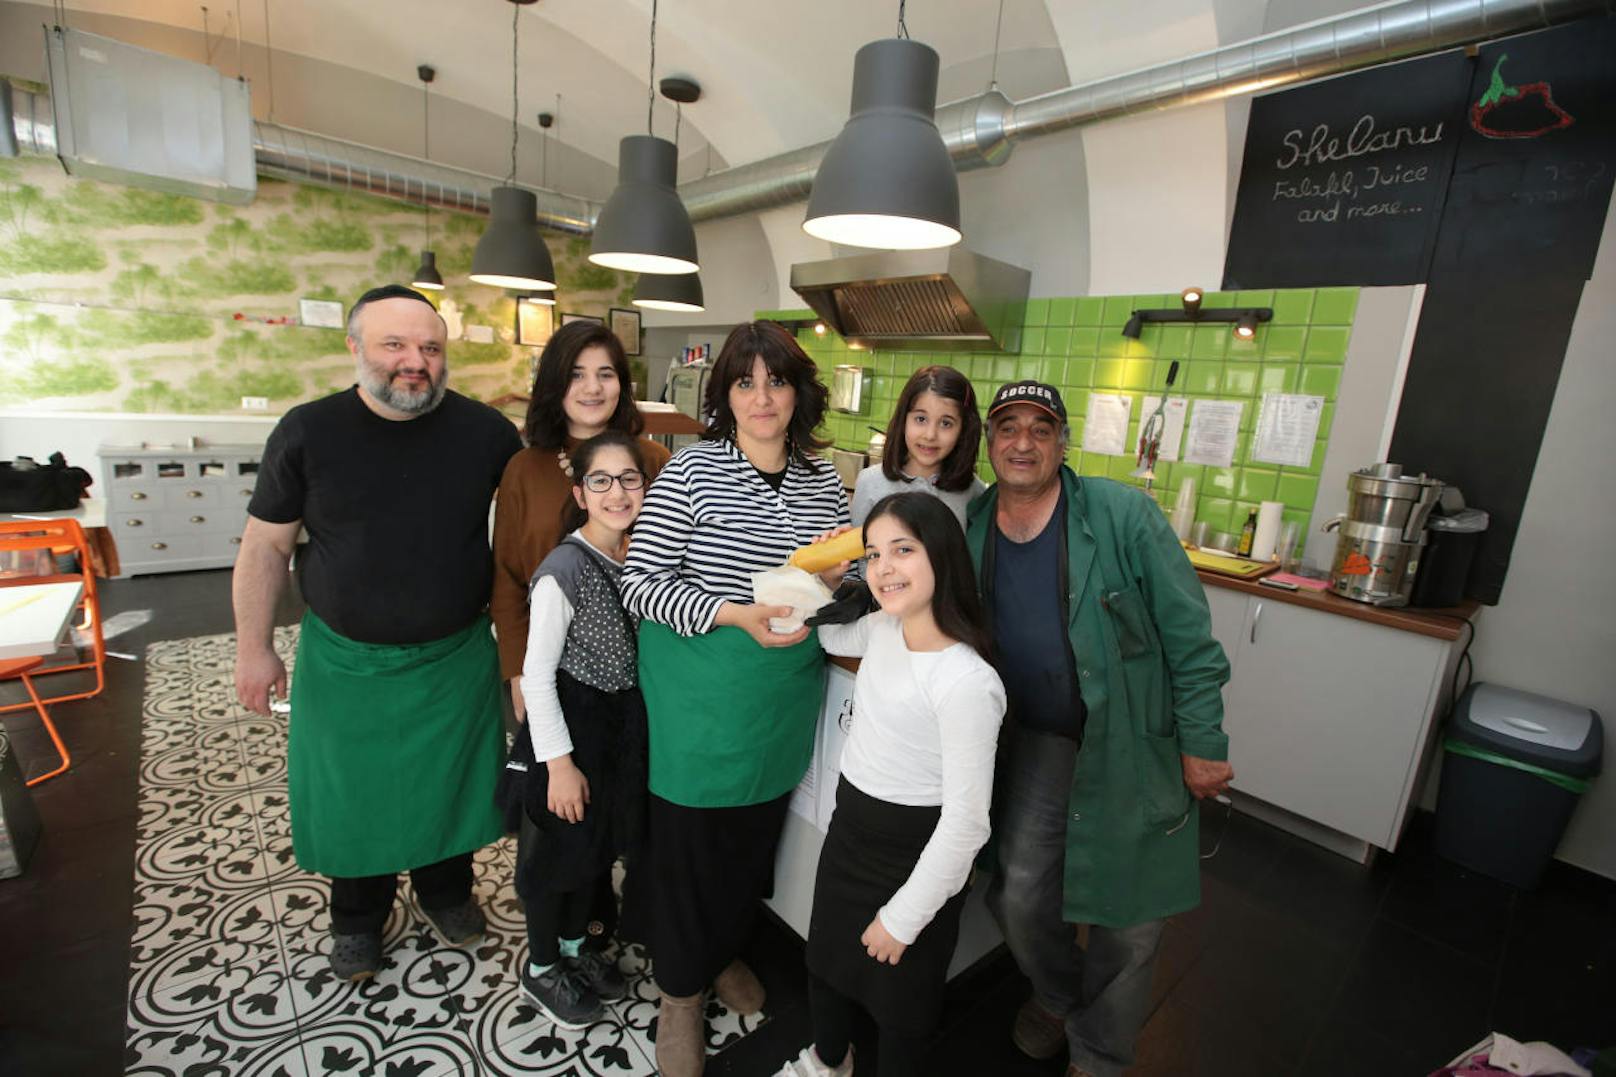 Anat Sadikov hat gemeinsam mit ihrem Mann Eliahu 2015 das Falafelgeschäft "Shelanu" in Wien- Leopoldstadt eröffnet.